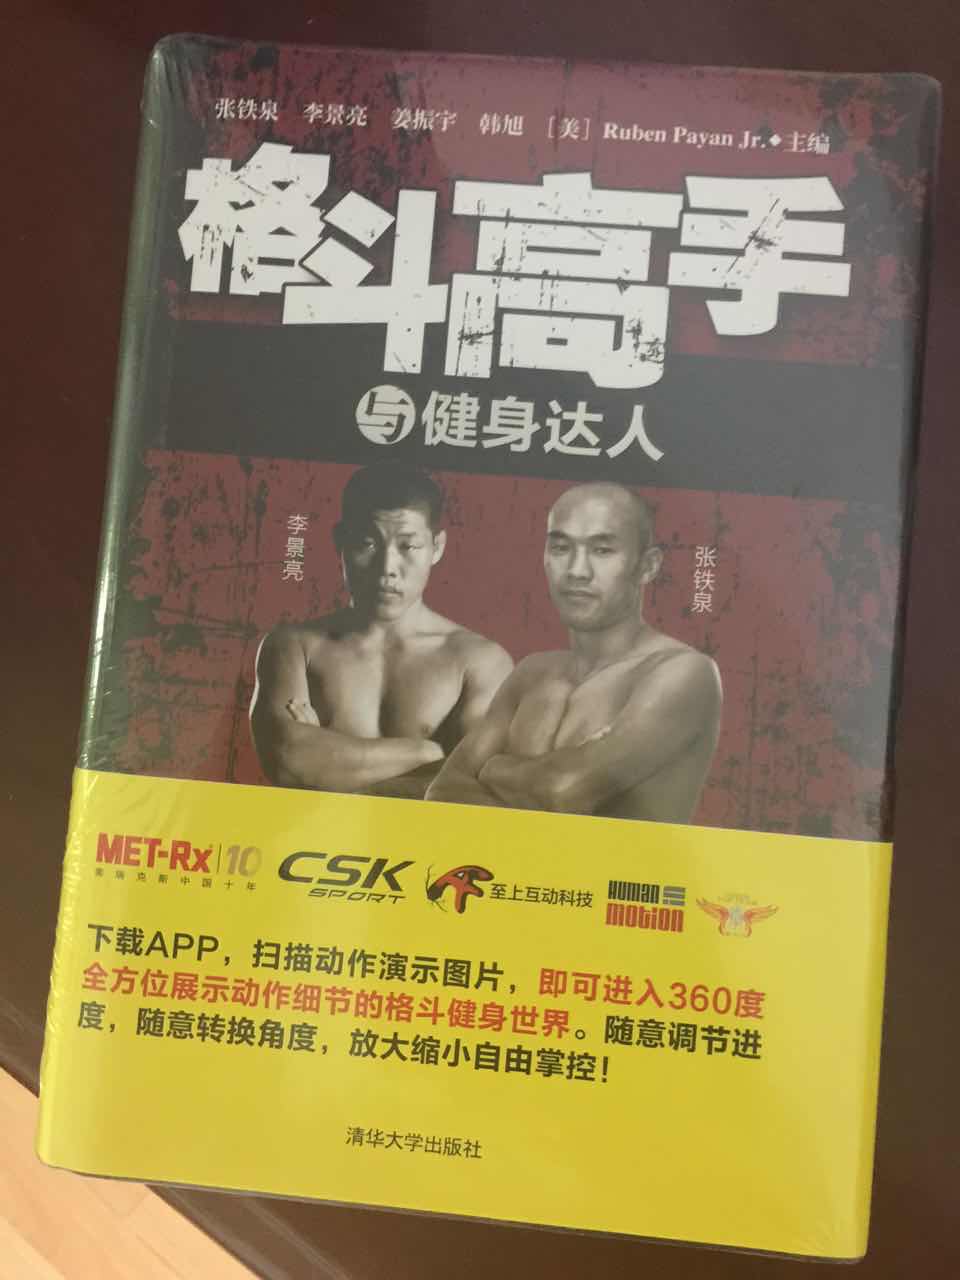 非常不错，配合APP更加真实！中国算是最专业的格斗书籍了！